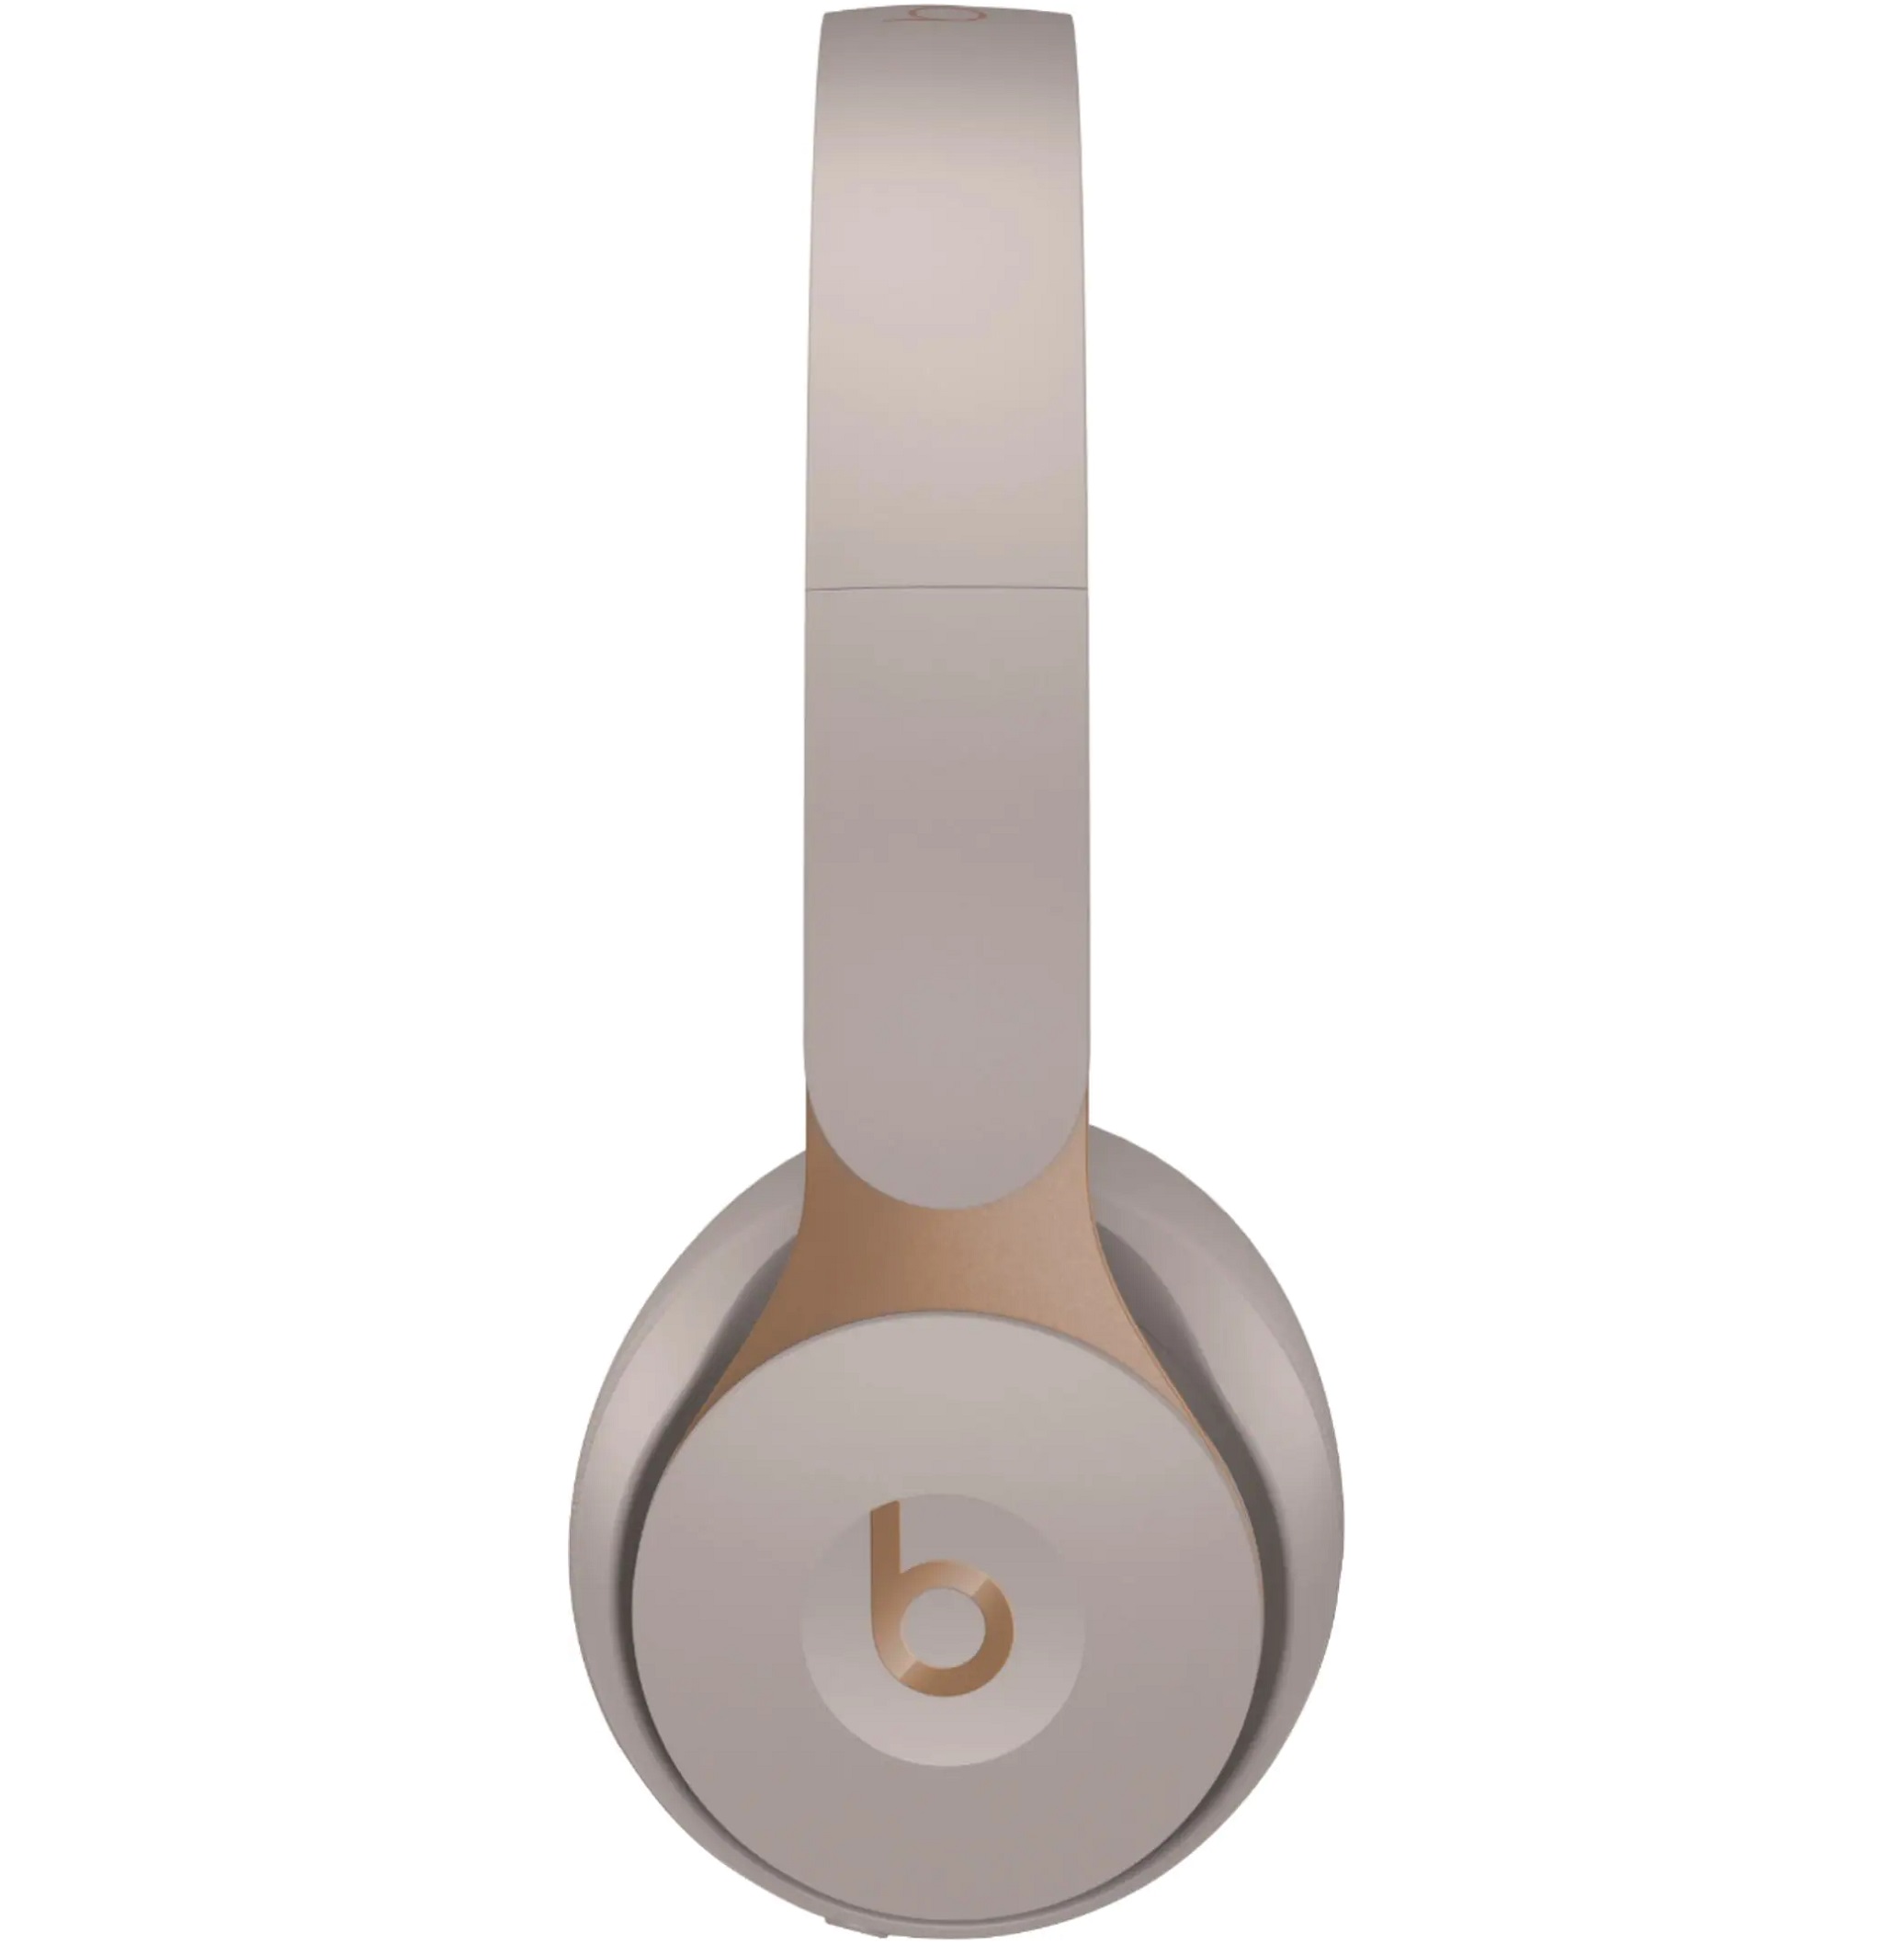 Beats Solo Pro Wireless Noise Cancelling On-Ear Headphones | eBay